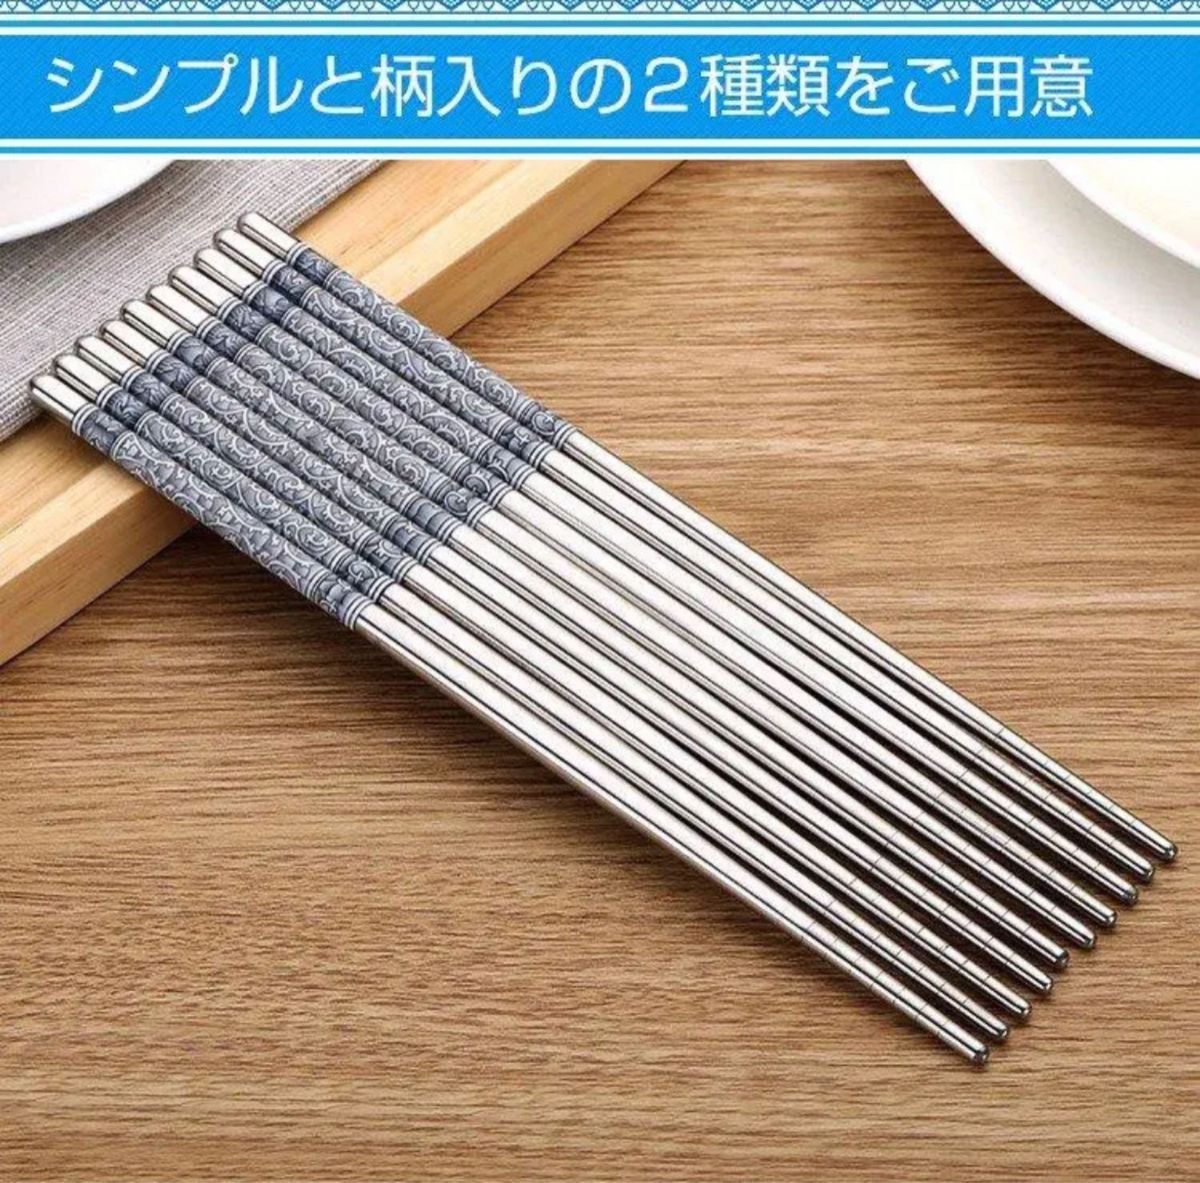 箸 ステンレス 耐久性 丈夫 耐熱 オシャレ 経済的 衛生的 キッチン 食事